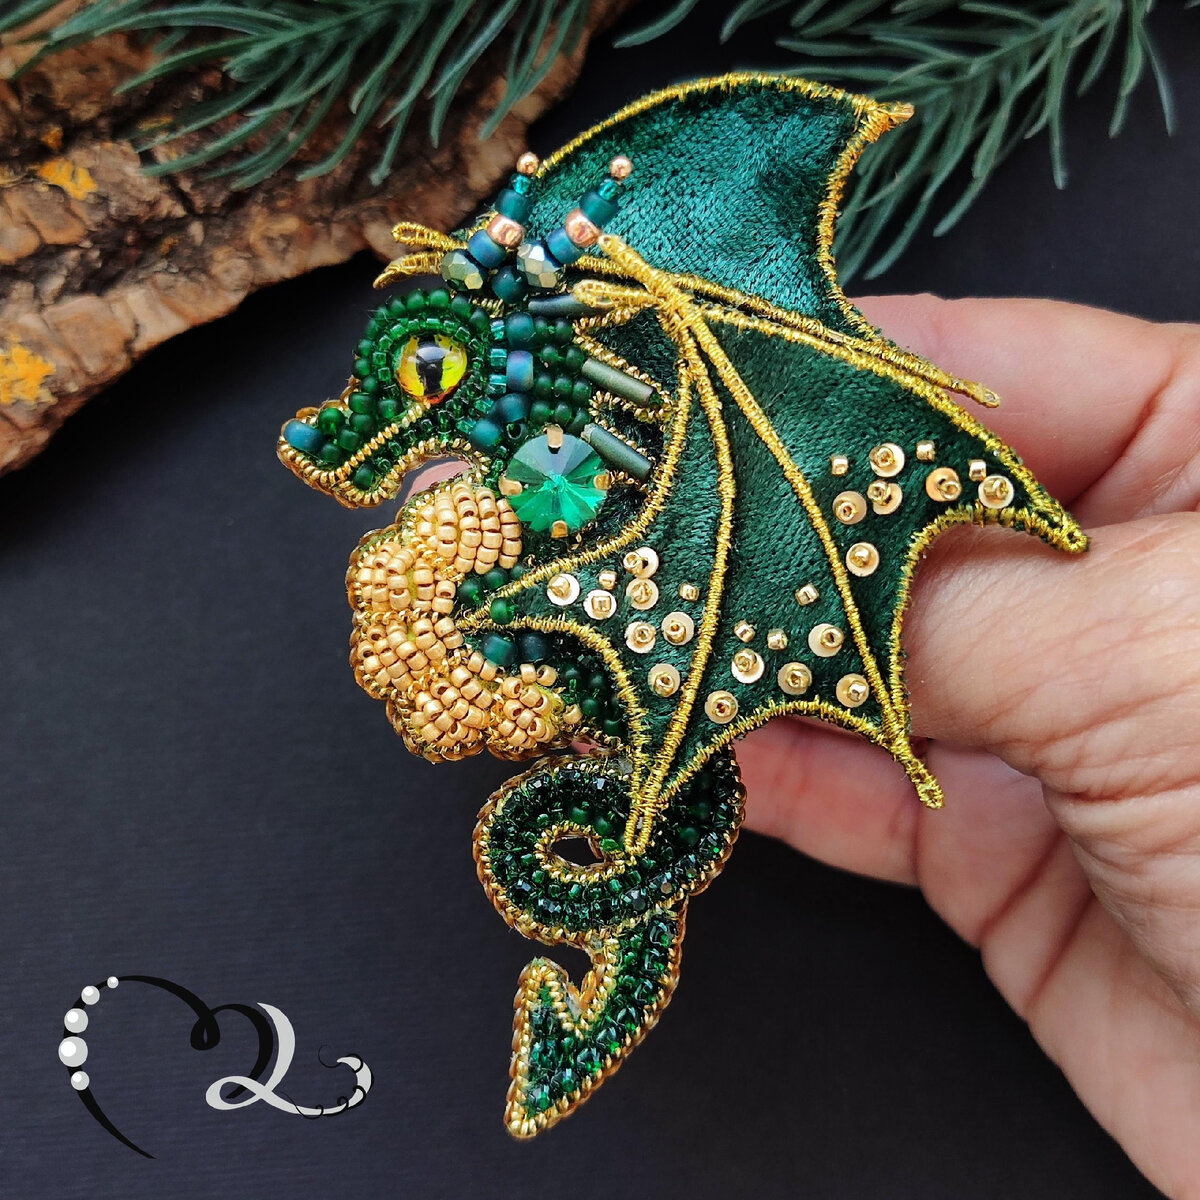 3D Дракон из бисера своими руками | Онлайн-журнал о ремонте и дизайне